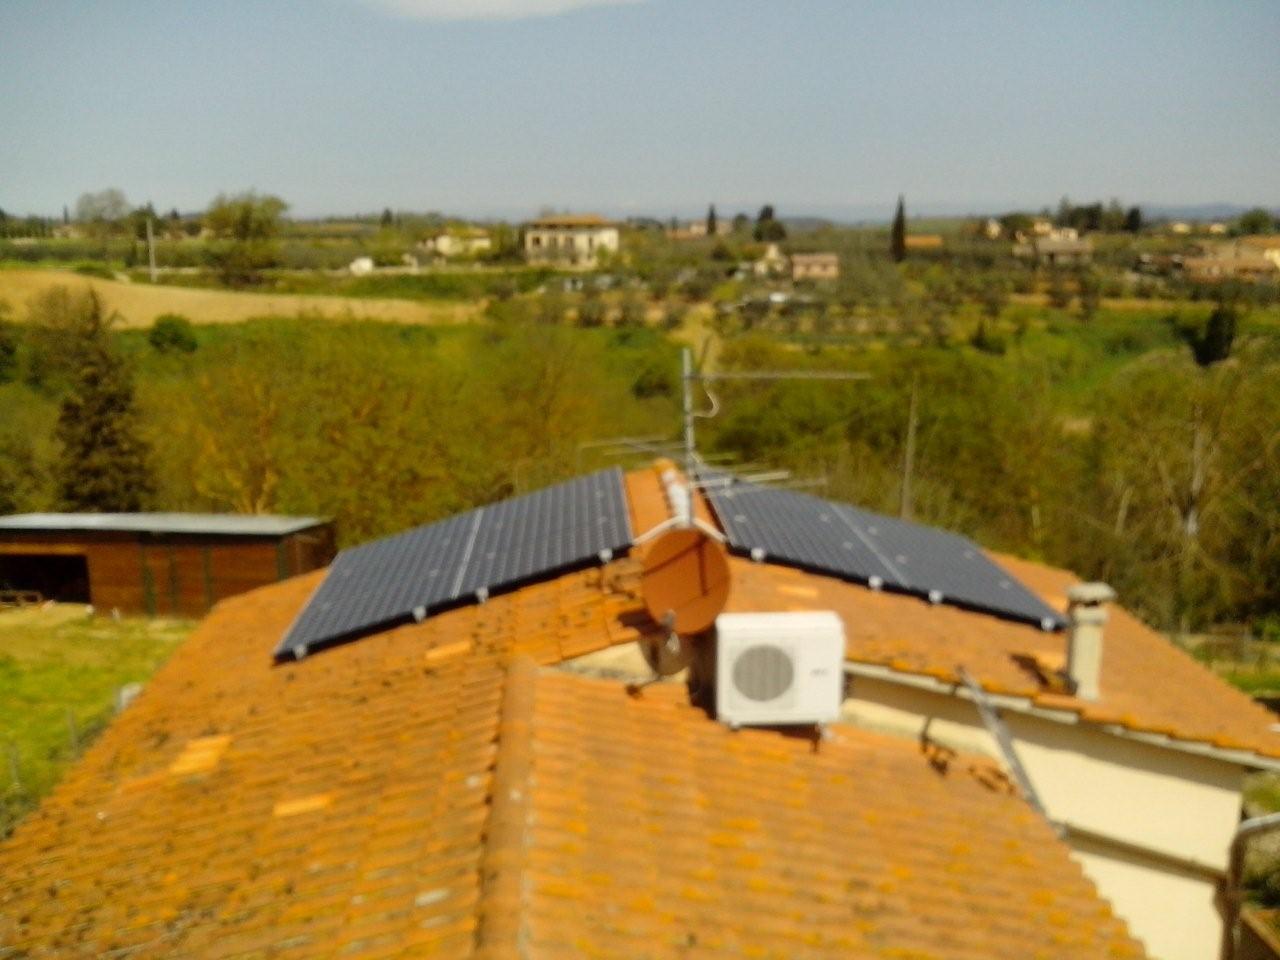 Impianto Impianti Solari Fotovoltaici 2016. Cogli le opportunità e la convenienza Lightland-SunPower a Colle di Val d'Elsa, Milano, 